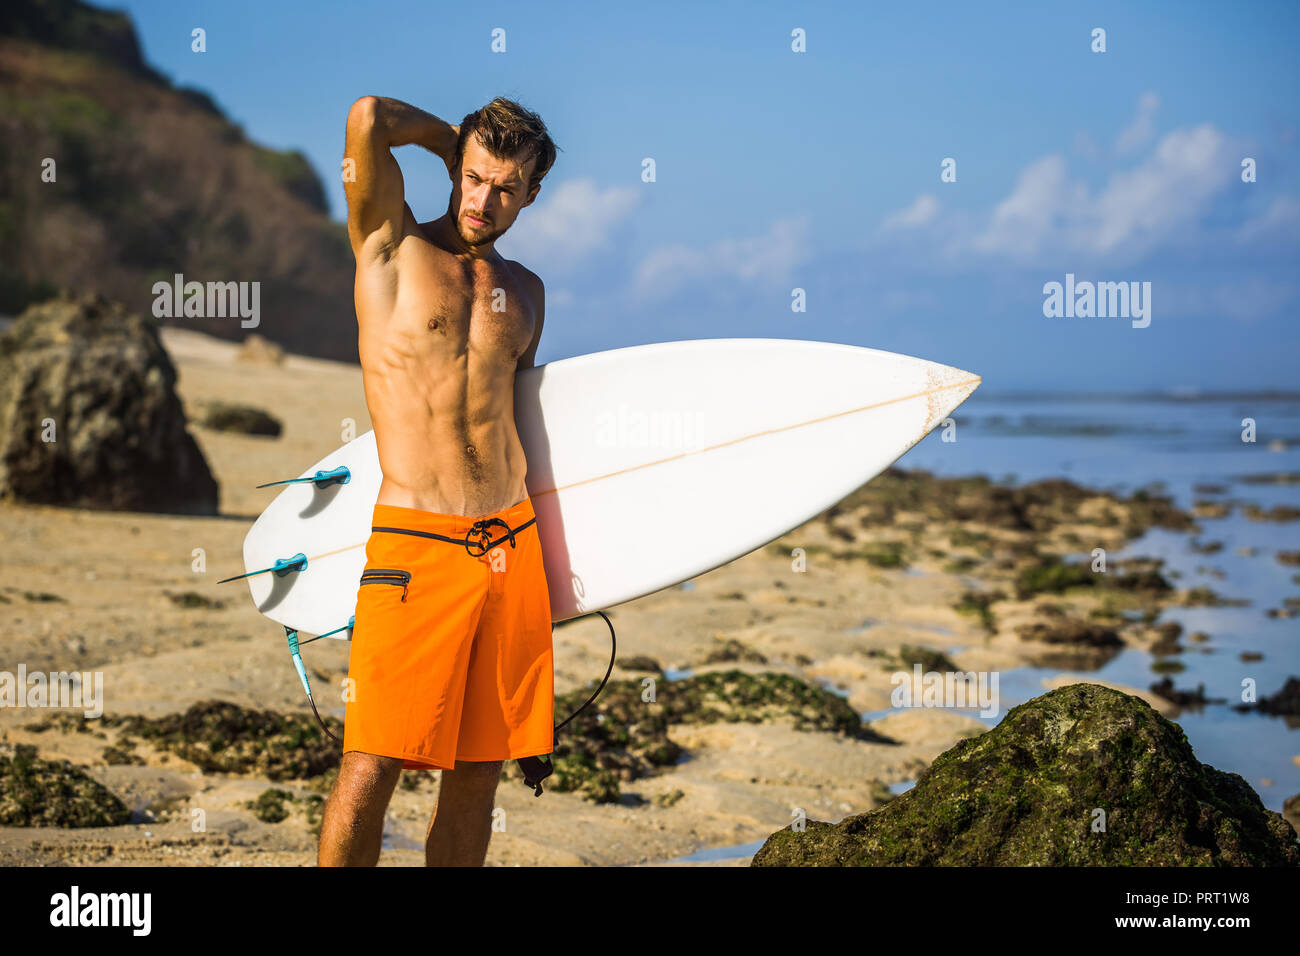 Junge Surfer mit Surfen board stehend auf Sandstrand in der Nähe von Ocean Stockfoto